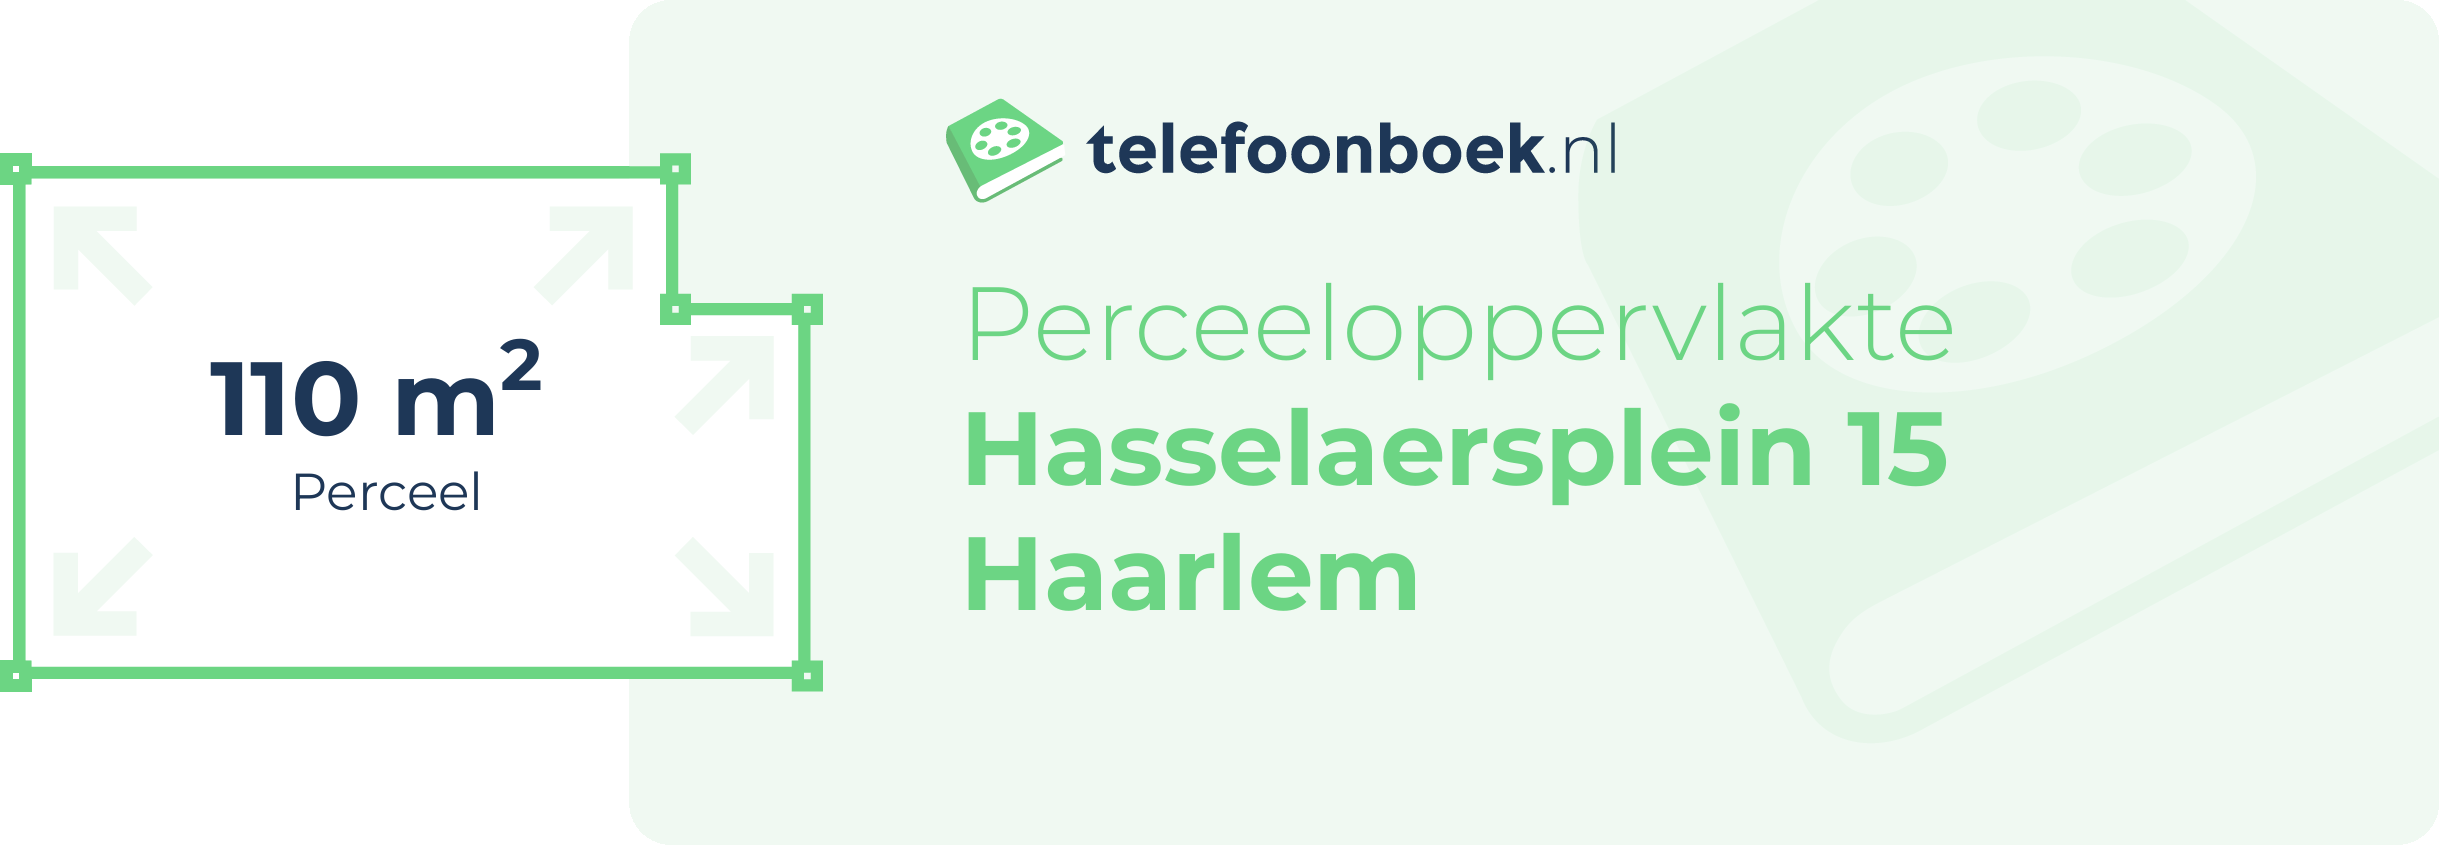 Perceeloppervlakte Hasselaersplein 15 Haarlem